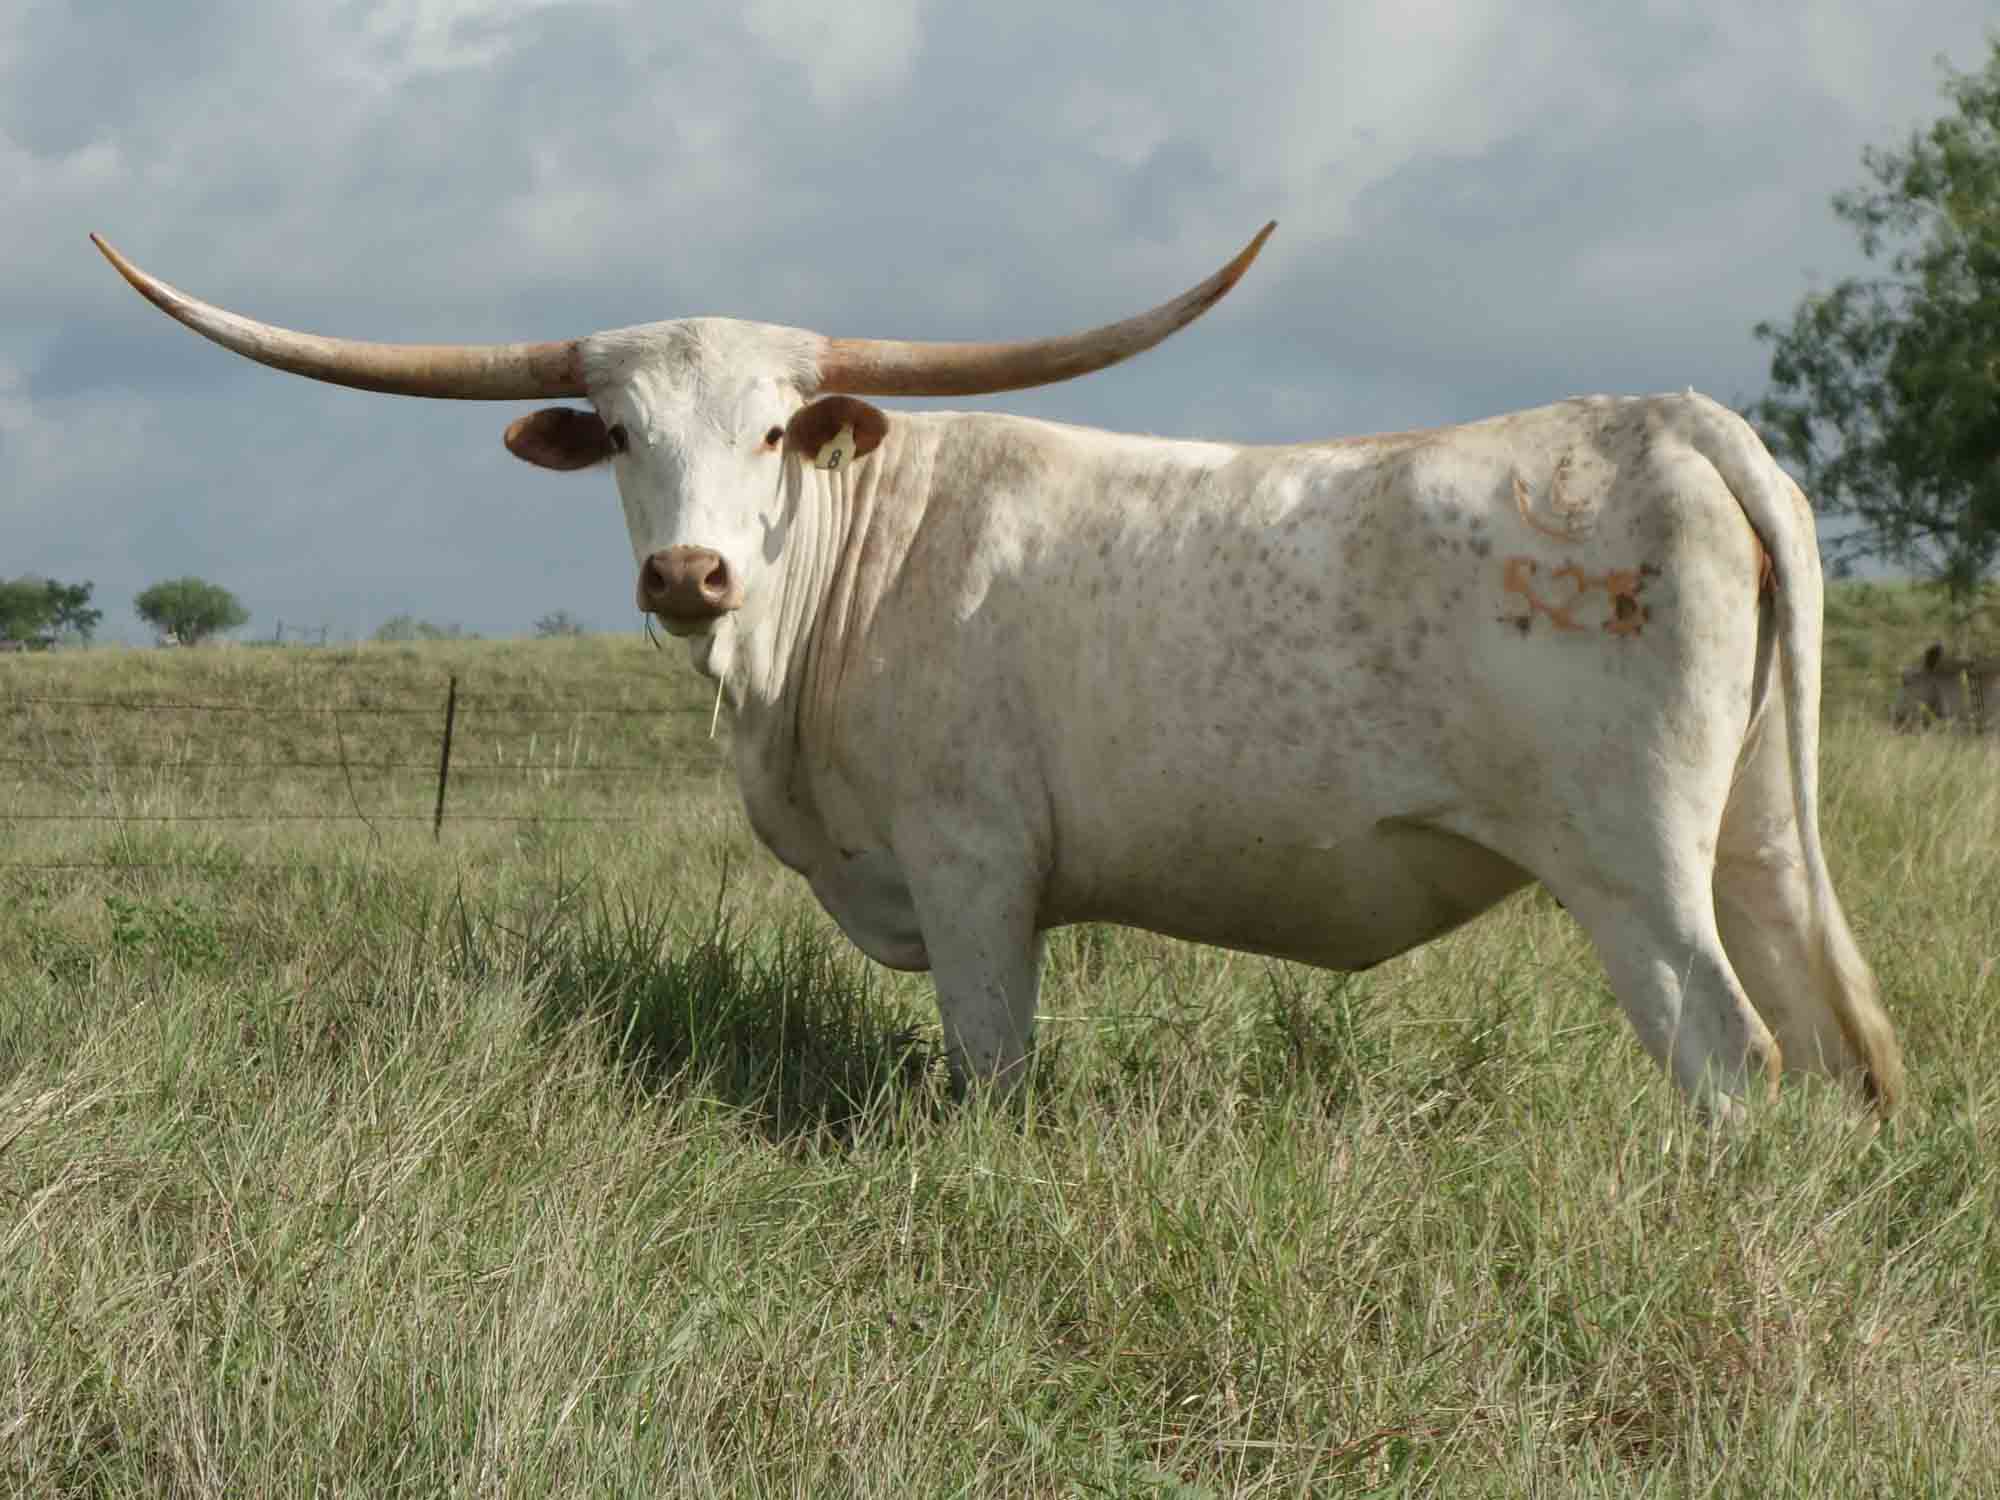 The Watusi cow